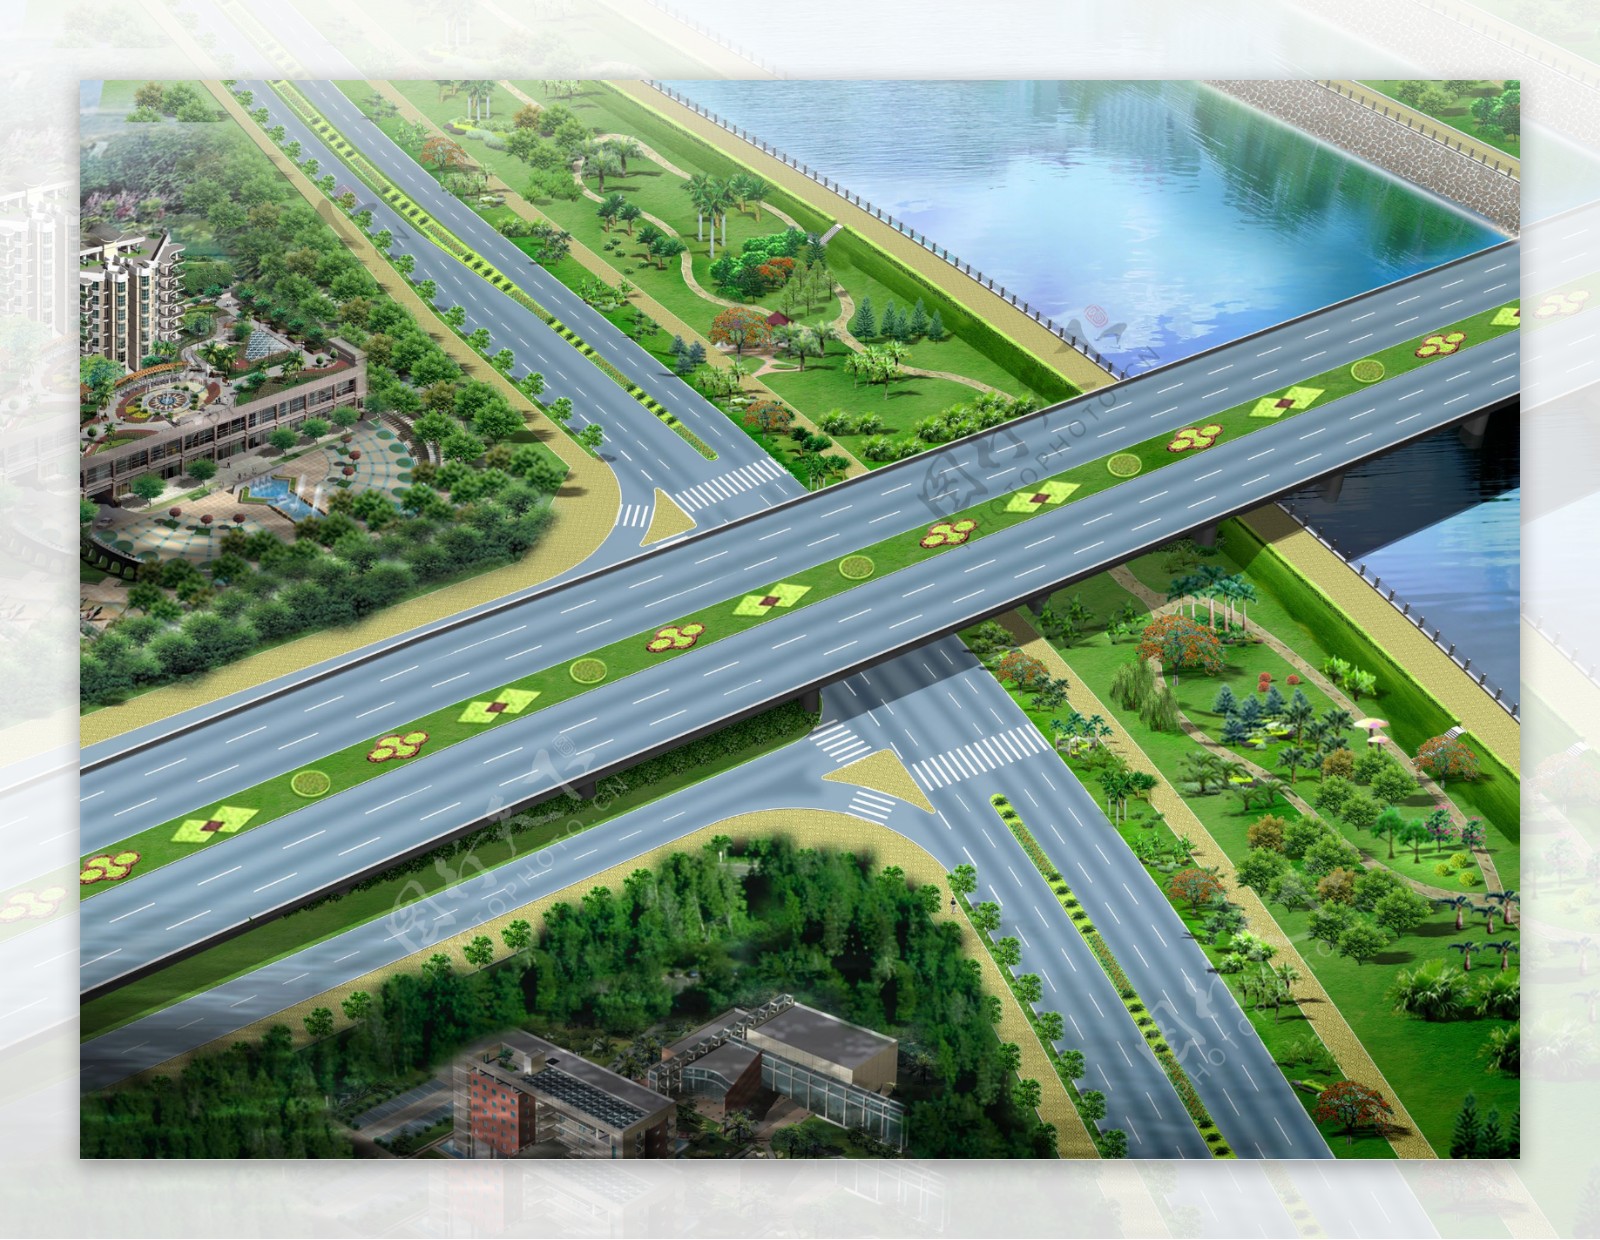 高速公路绿化效果鸟瞰图片